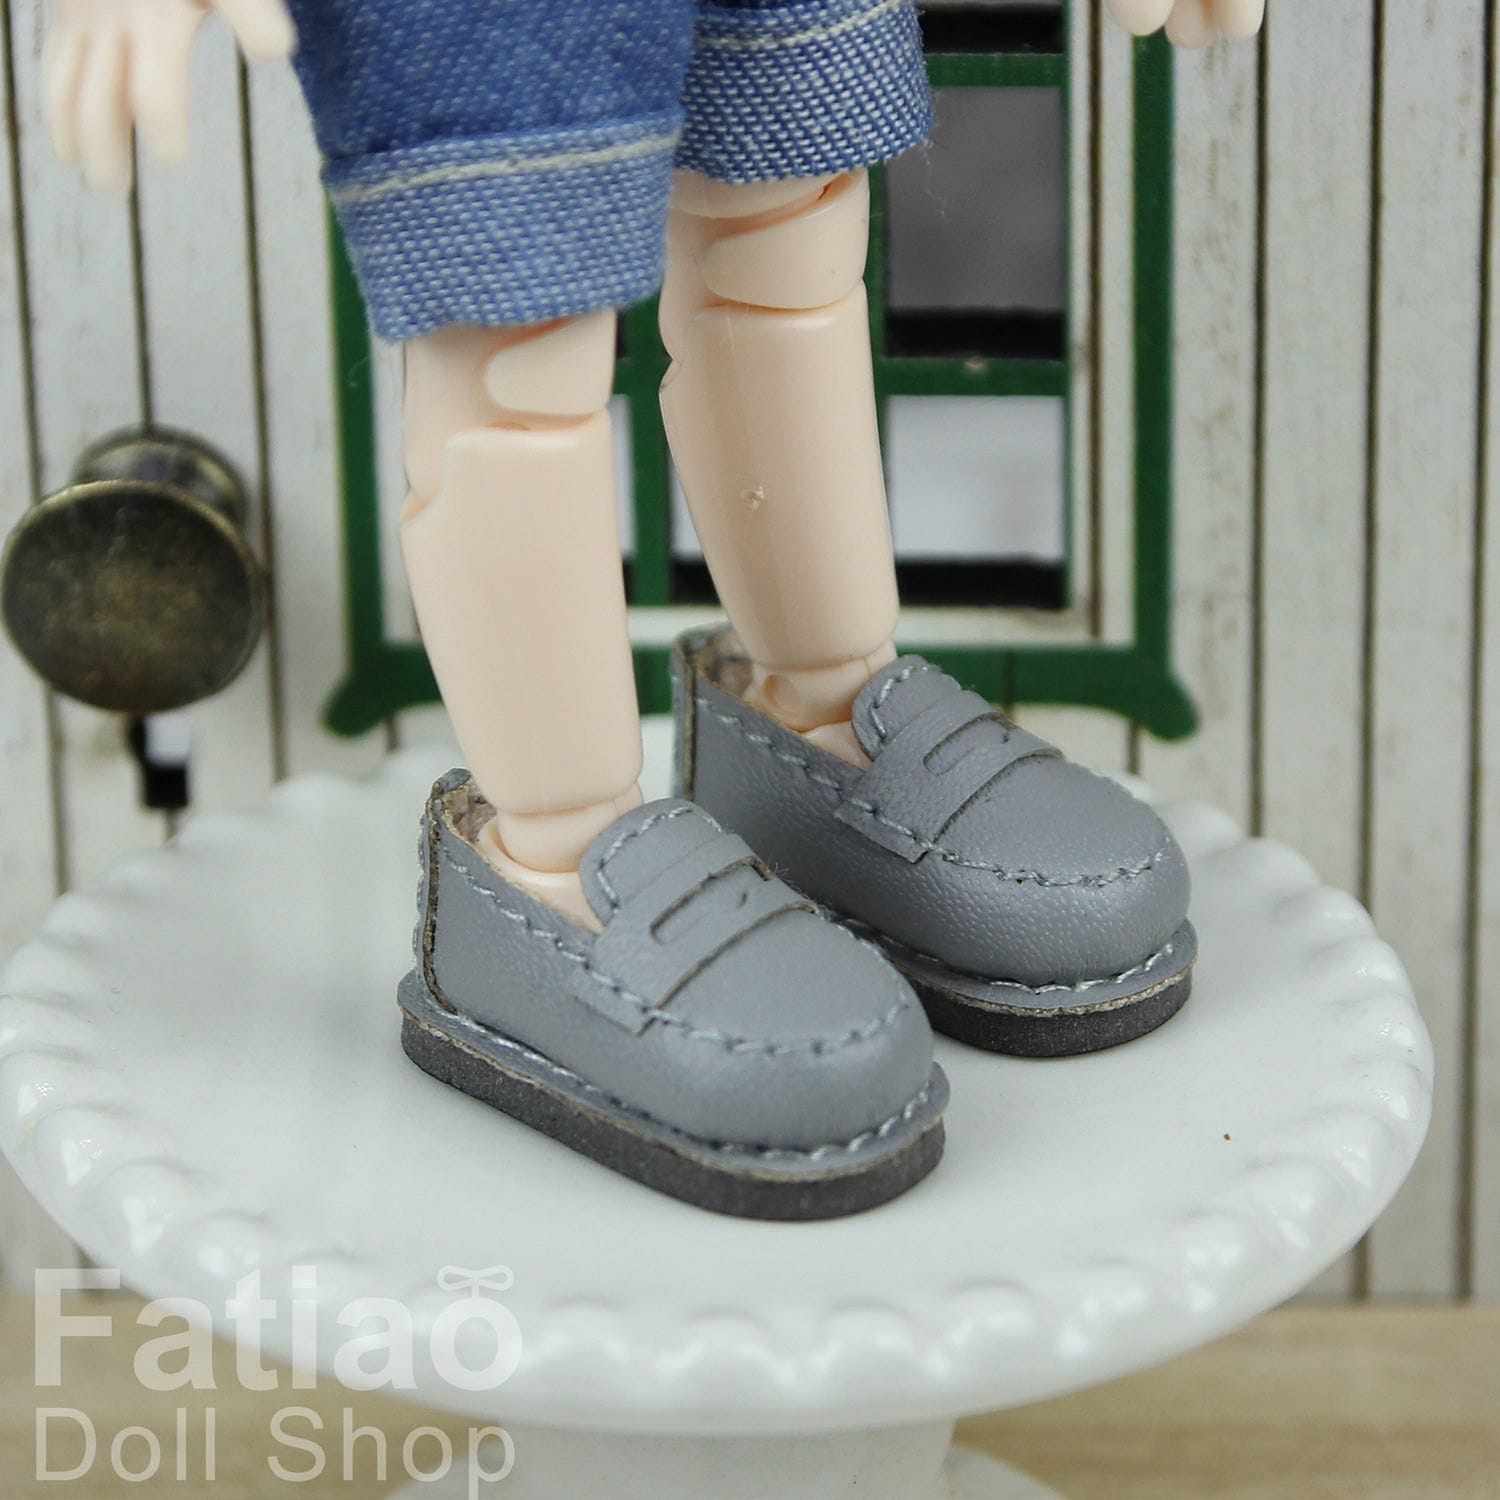 【Fatiao Doll Shop】學生皮鞋 樂福鞋 OB OBITSU